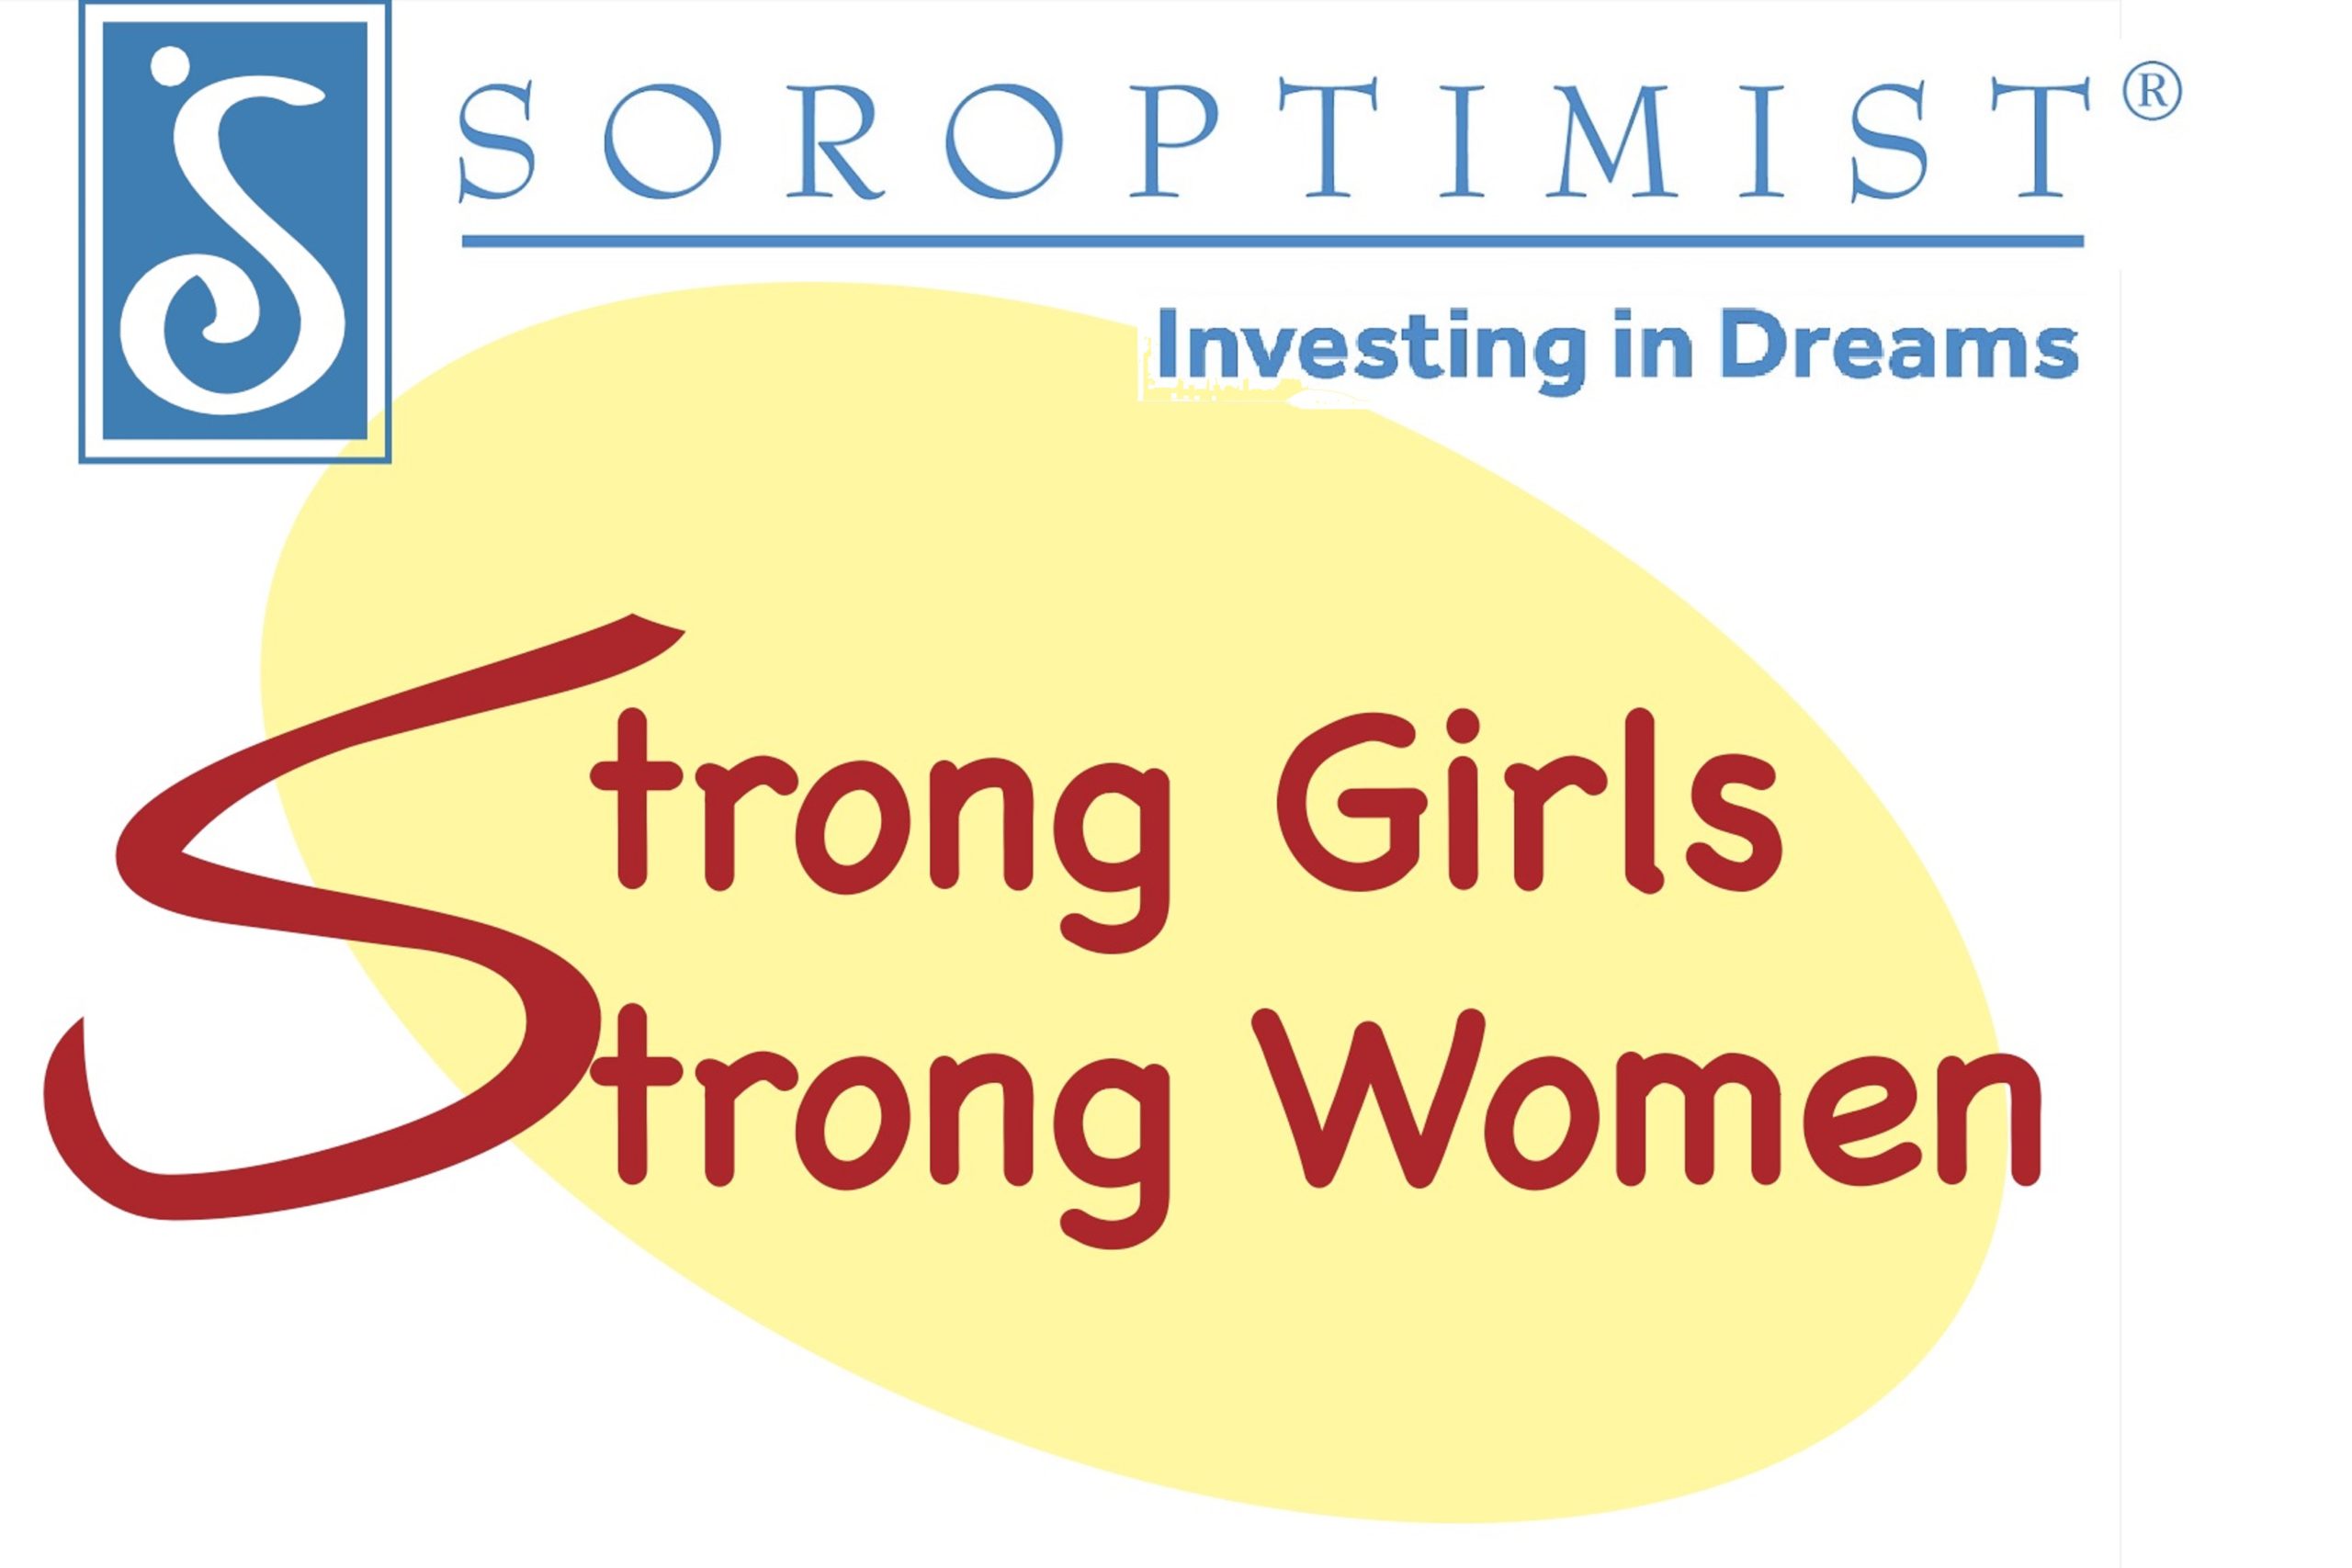 Soroptimist Strong Girls Strong Women